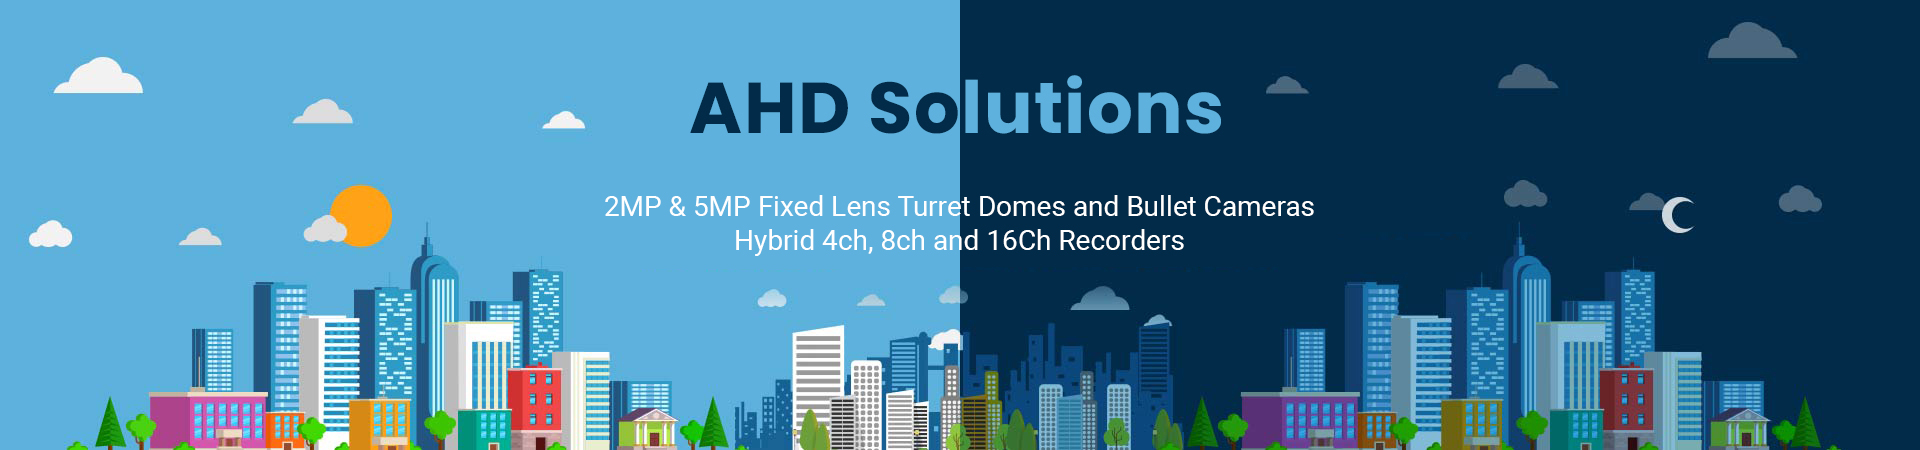 AHD Solutions